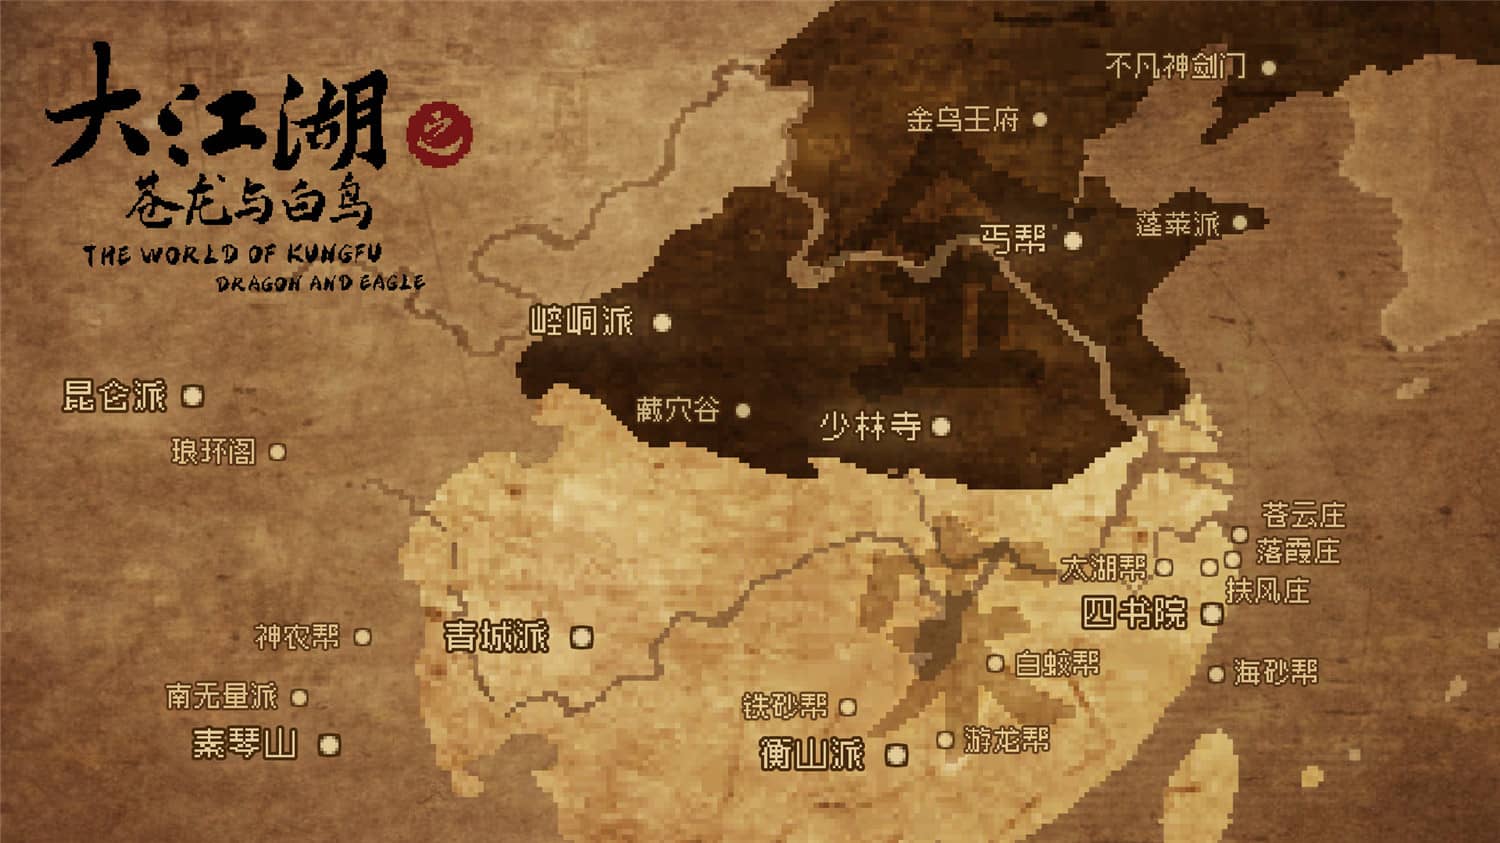 大江湖之苍龙与白鸟/The World Of Kong Fu-1